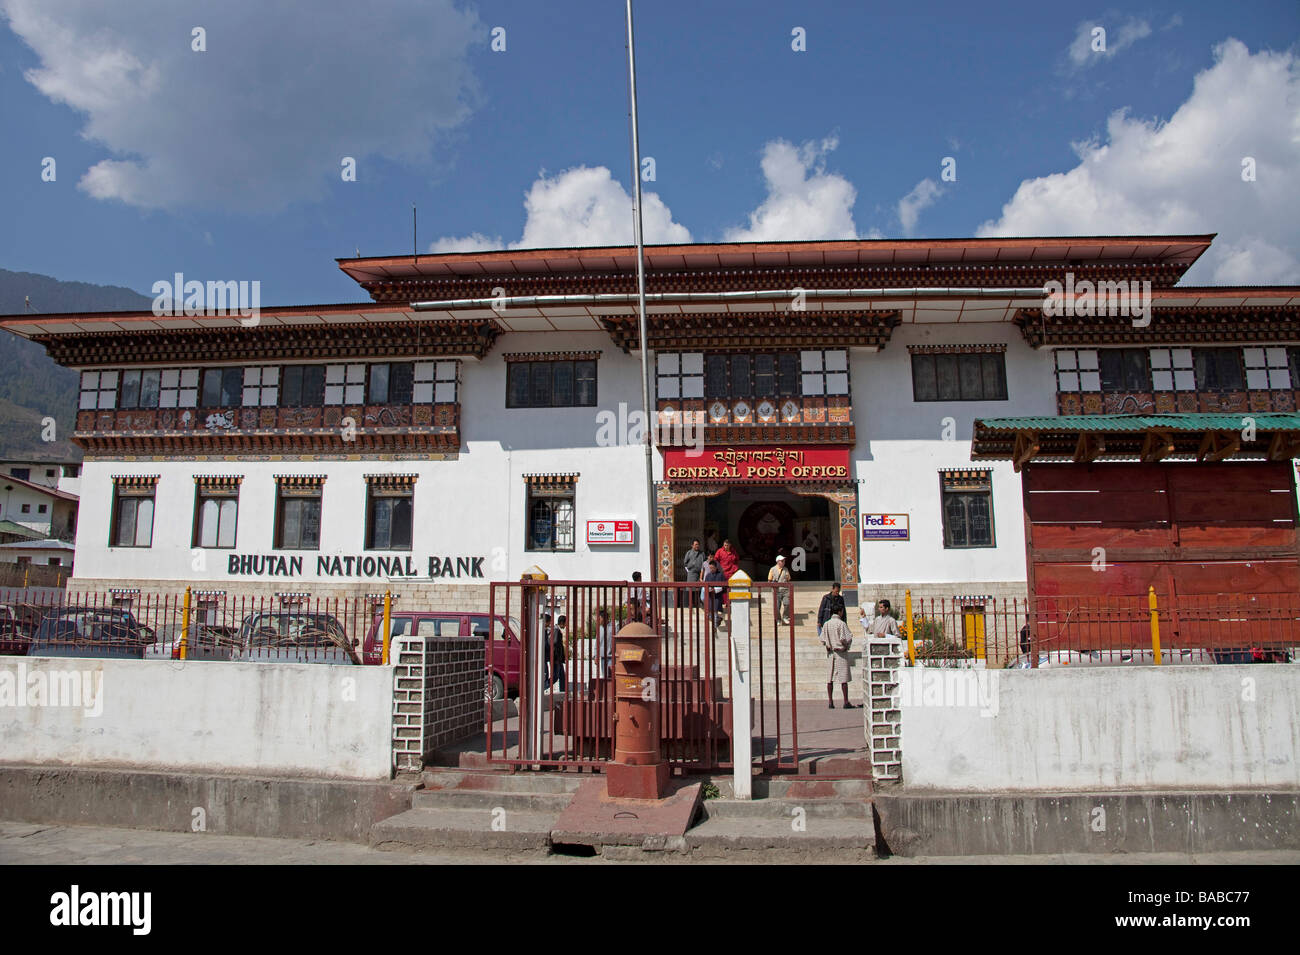 Rote Säule Box, Briefkasten außerhalb General Post Office und Bank in Thimphu Bhutan Asien 91004 Bhutan-Thimphu Stockfoto